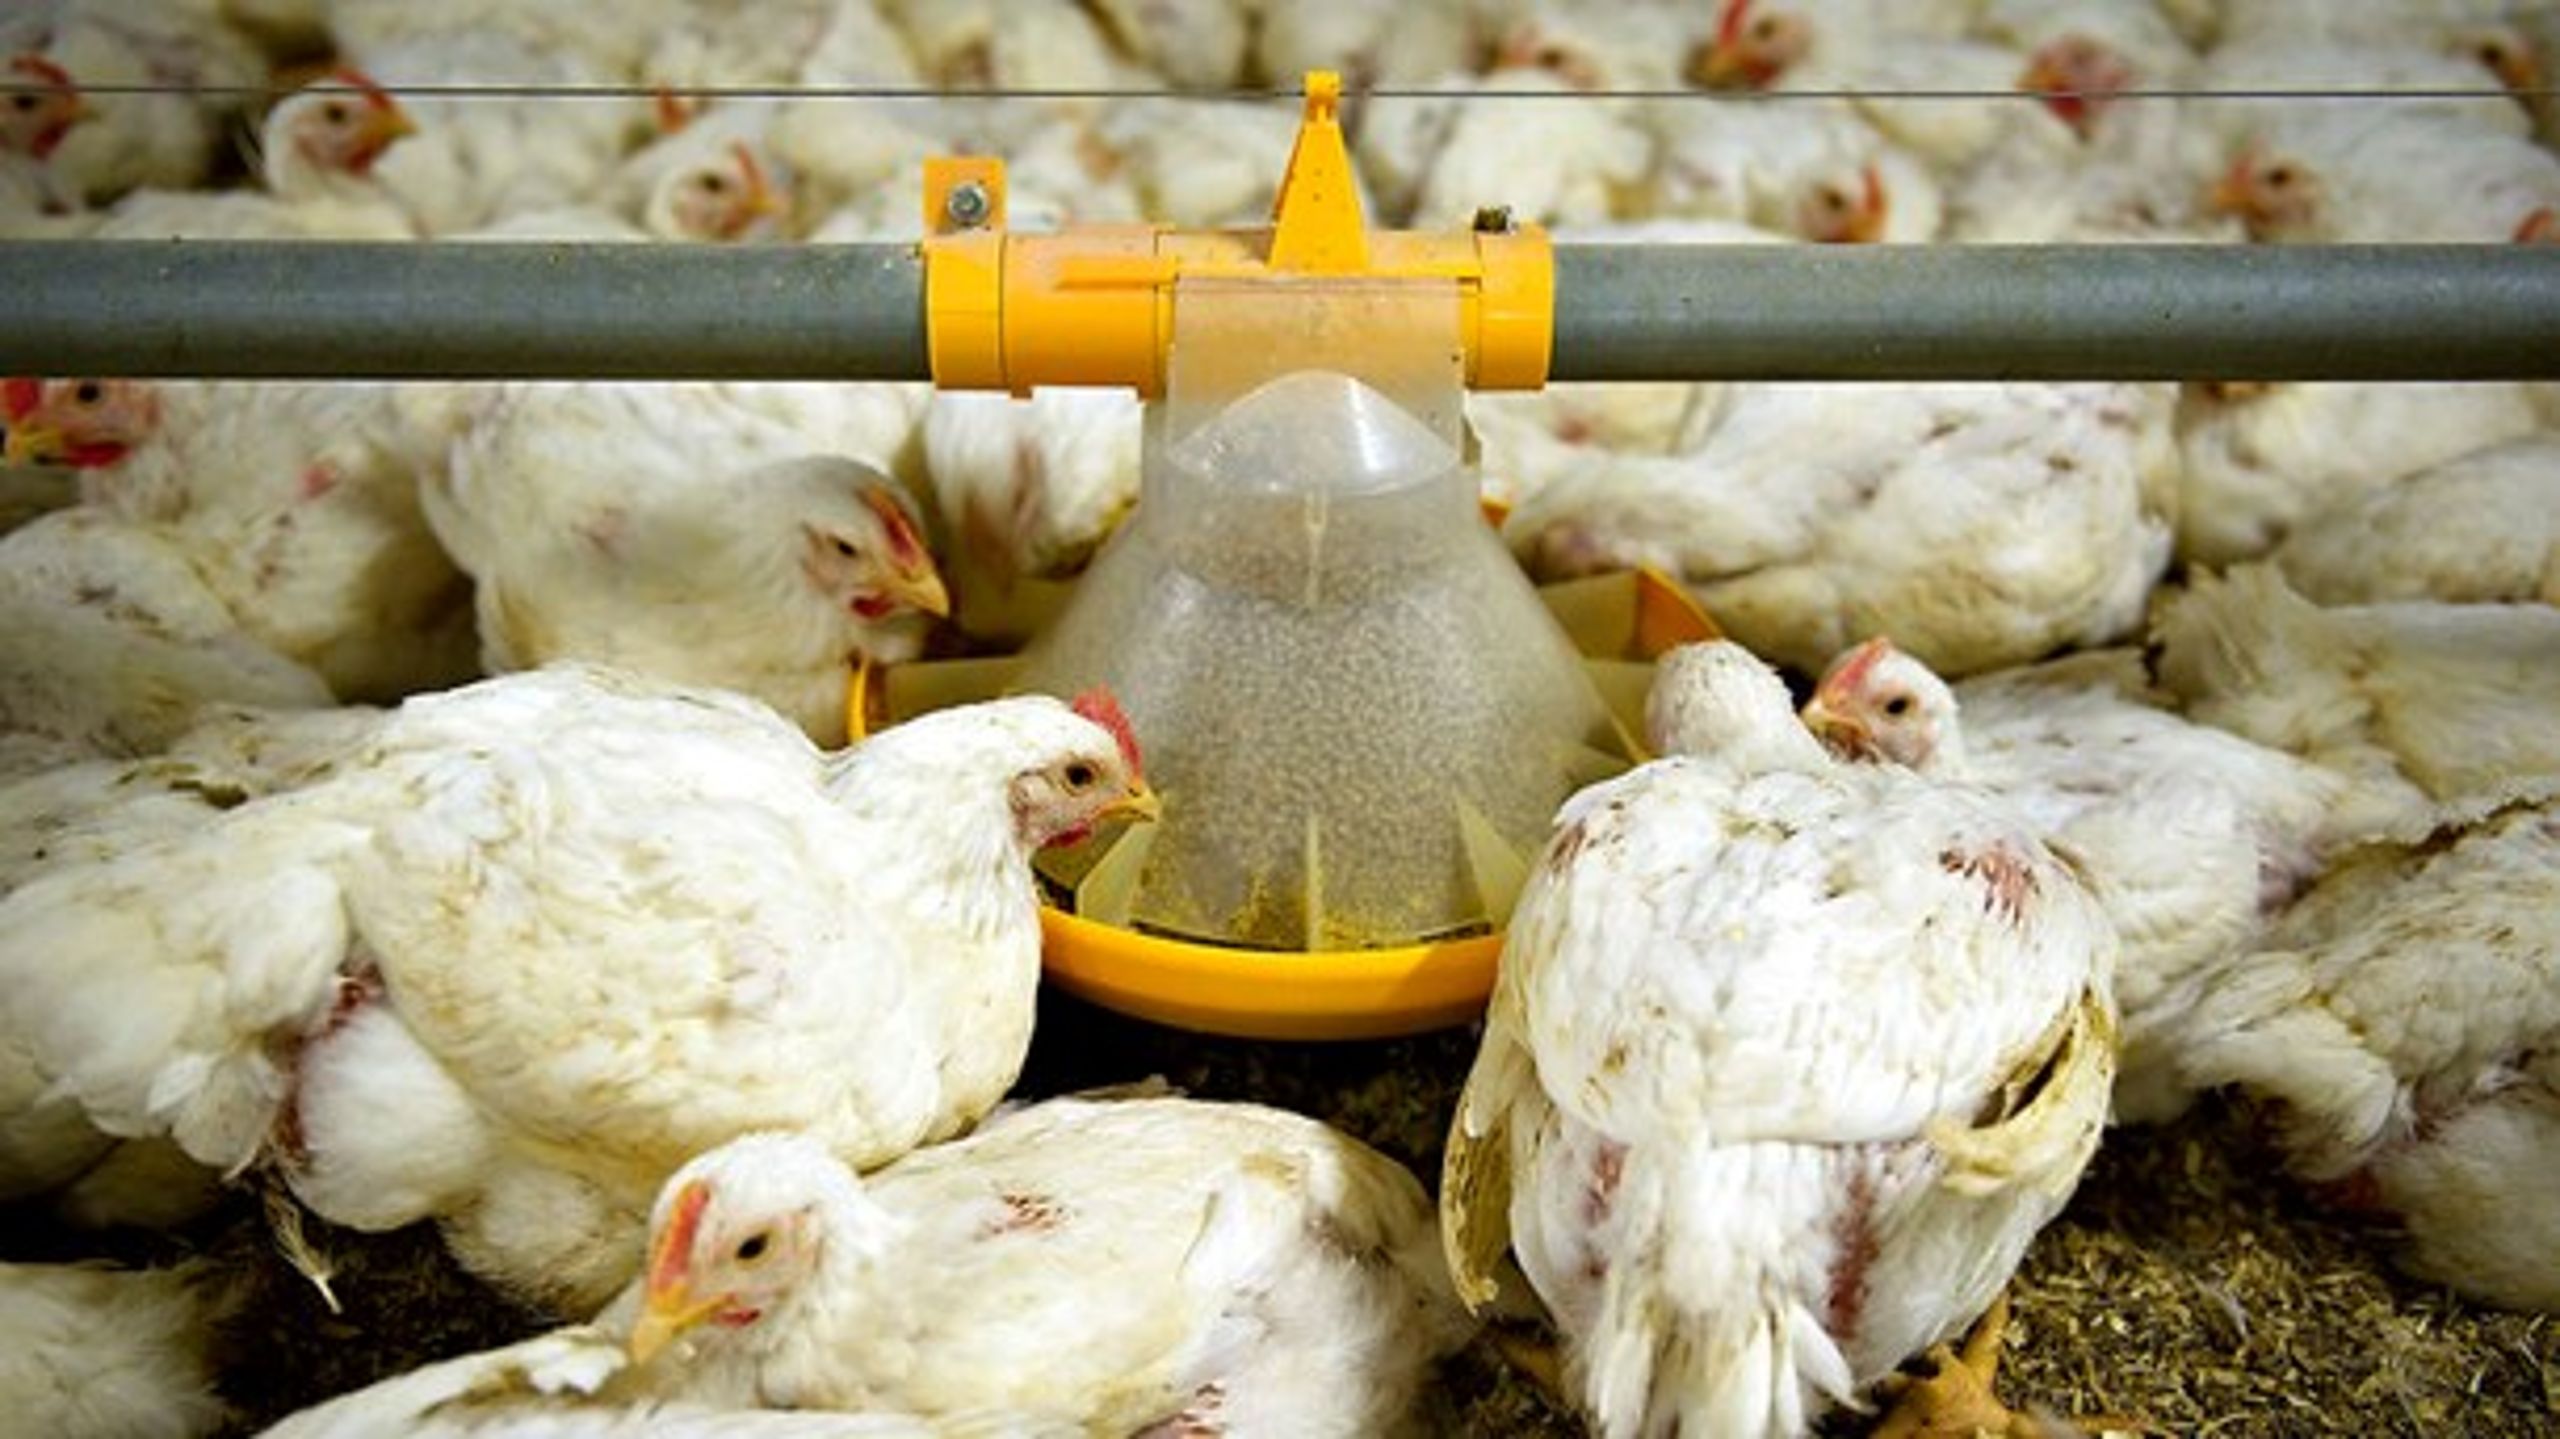 I USA er det særligt kyllingekød uden brug af antibiotika, der hitter. Blandt andet har McDonalds meldt ud, at de frem mod 2027 vil udfase kyllingekød produceret med antibiotika.